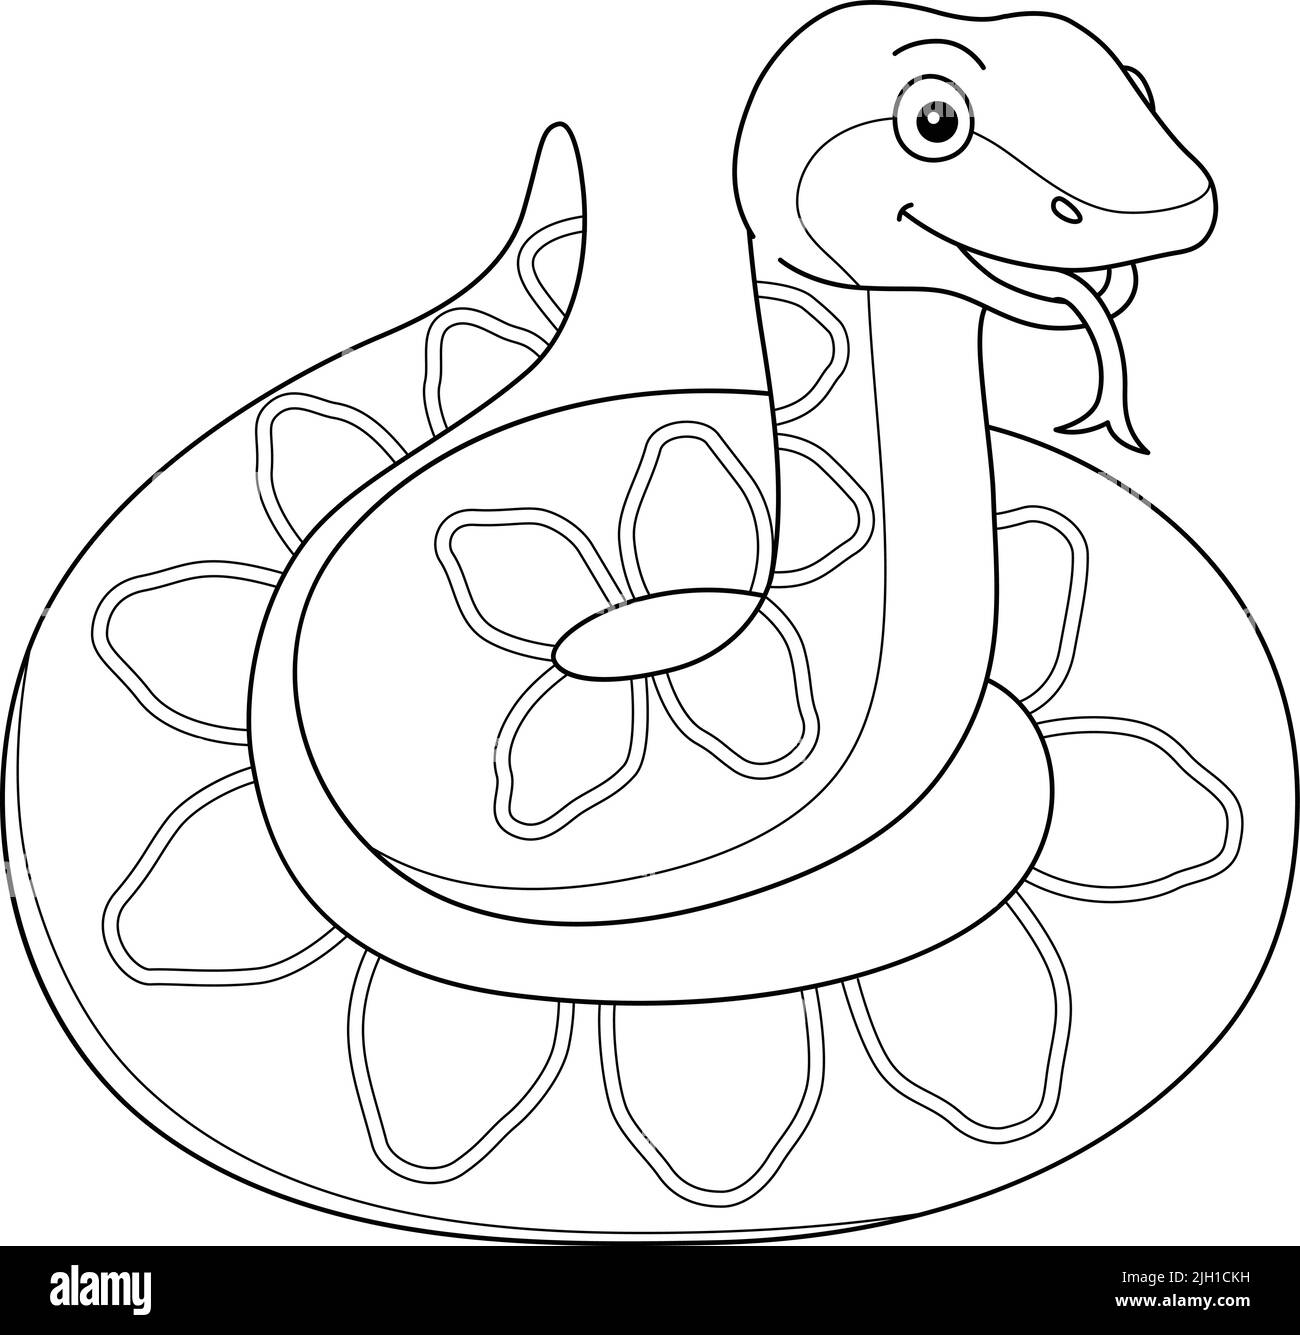 Viper Animal Coloring Page for Kids Illustrazione Vettoriale